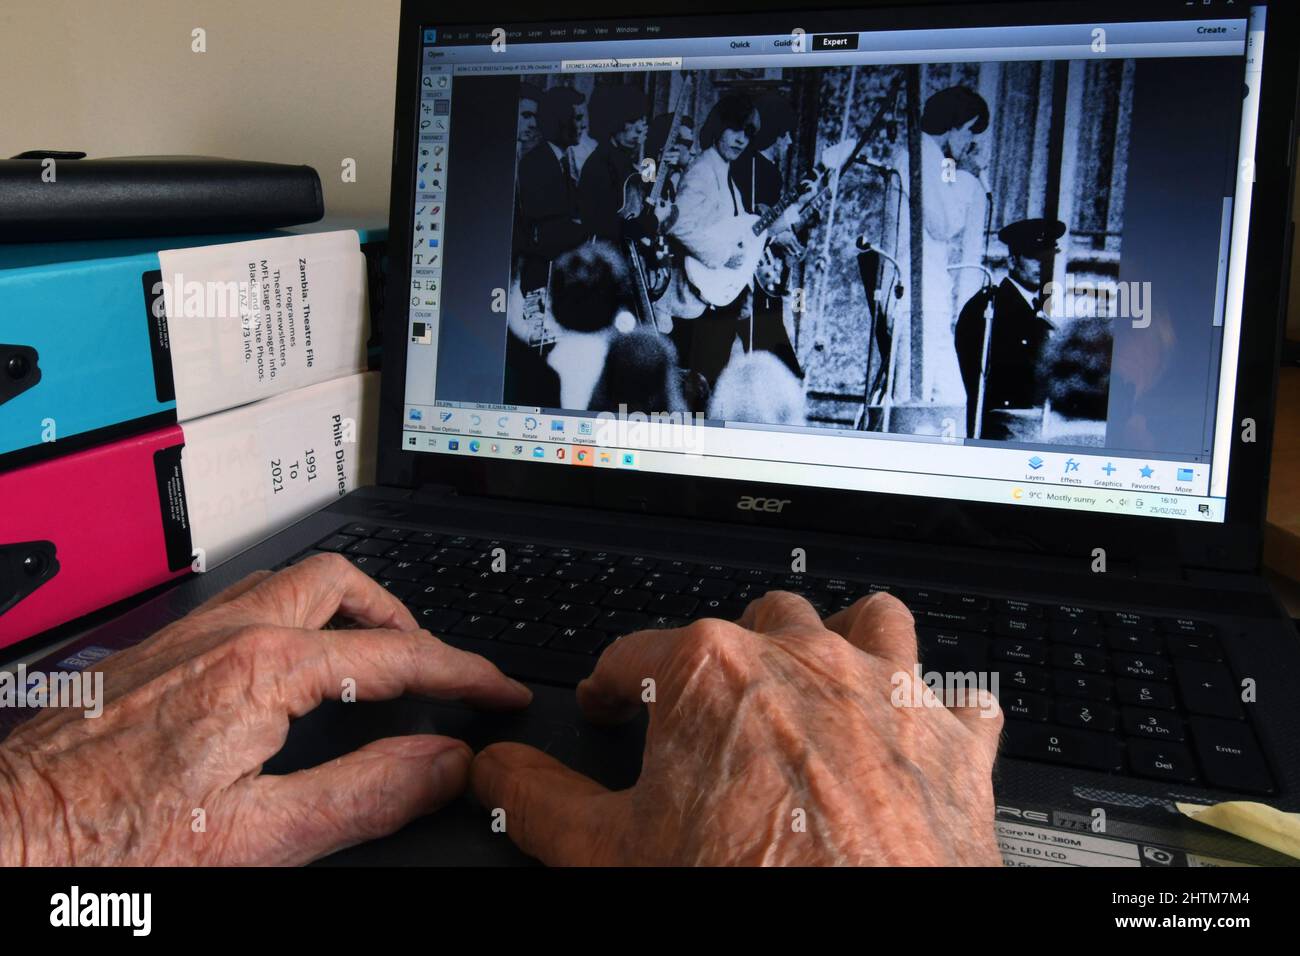 Alte Hände an einer Computertastatur, die Bilder finden, um angenehme Erinnerungen auszulösen, wenn man älter wird. Musik spielte eine wichtige Rolle im Leben in den 1960' Stockfoto